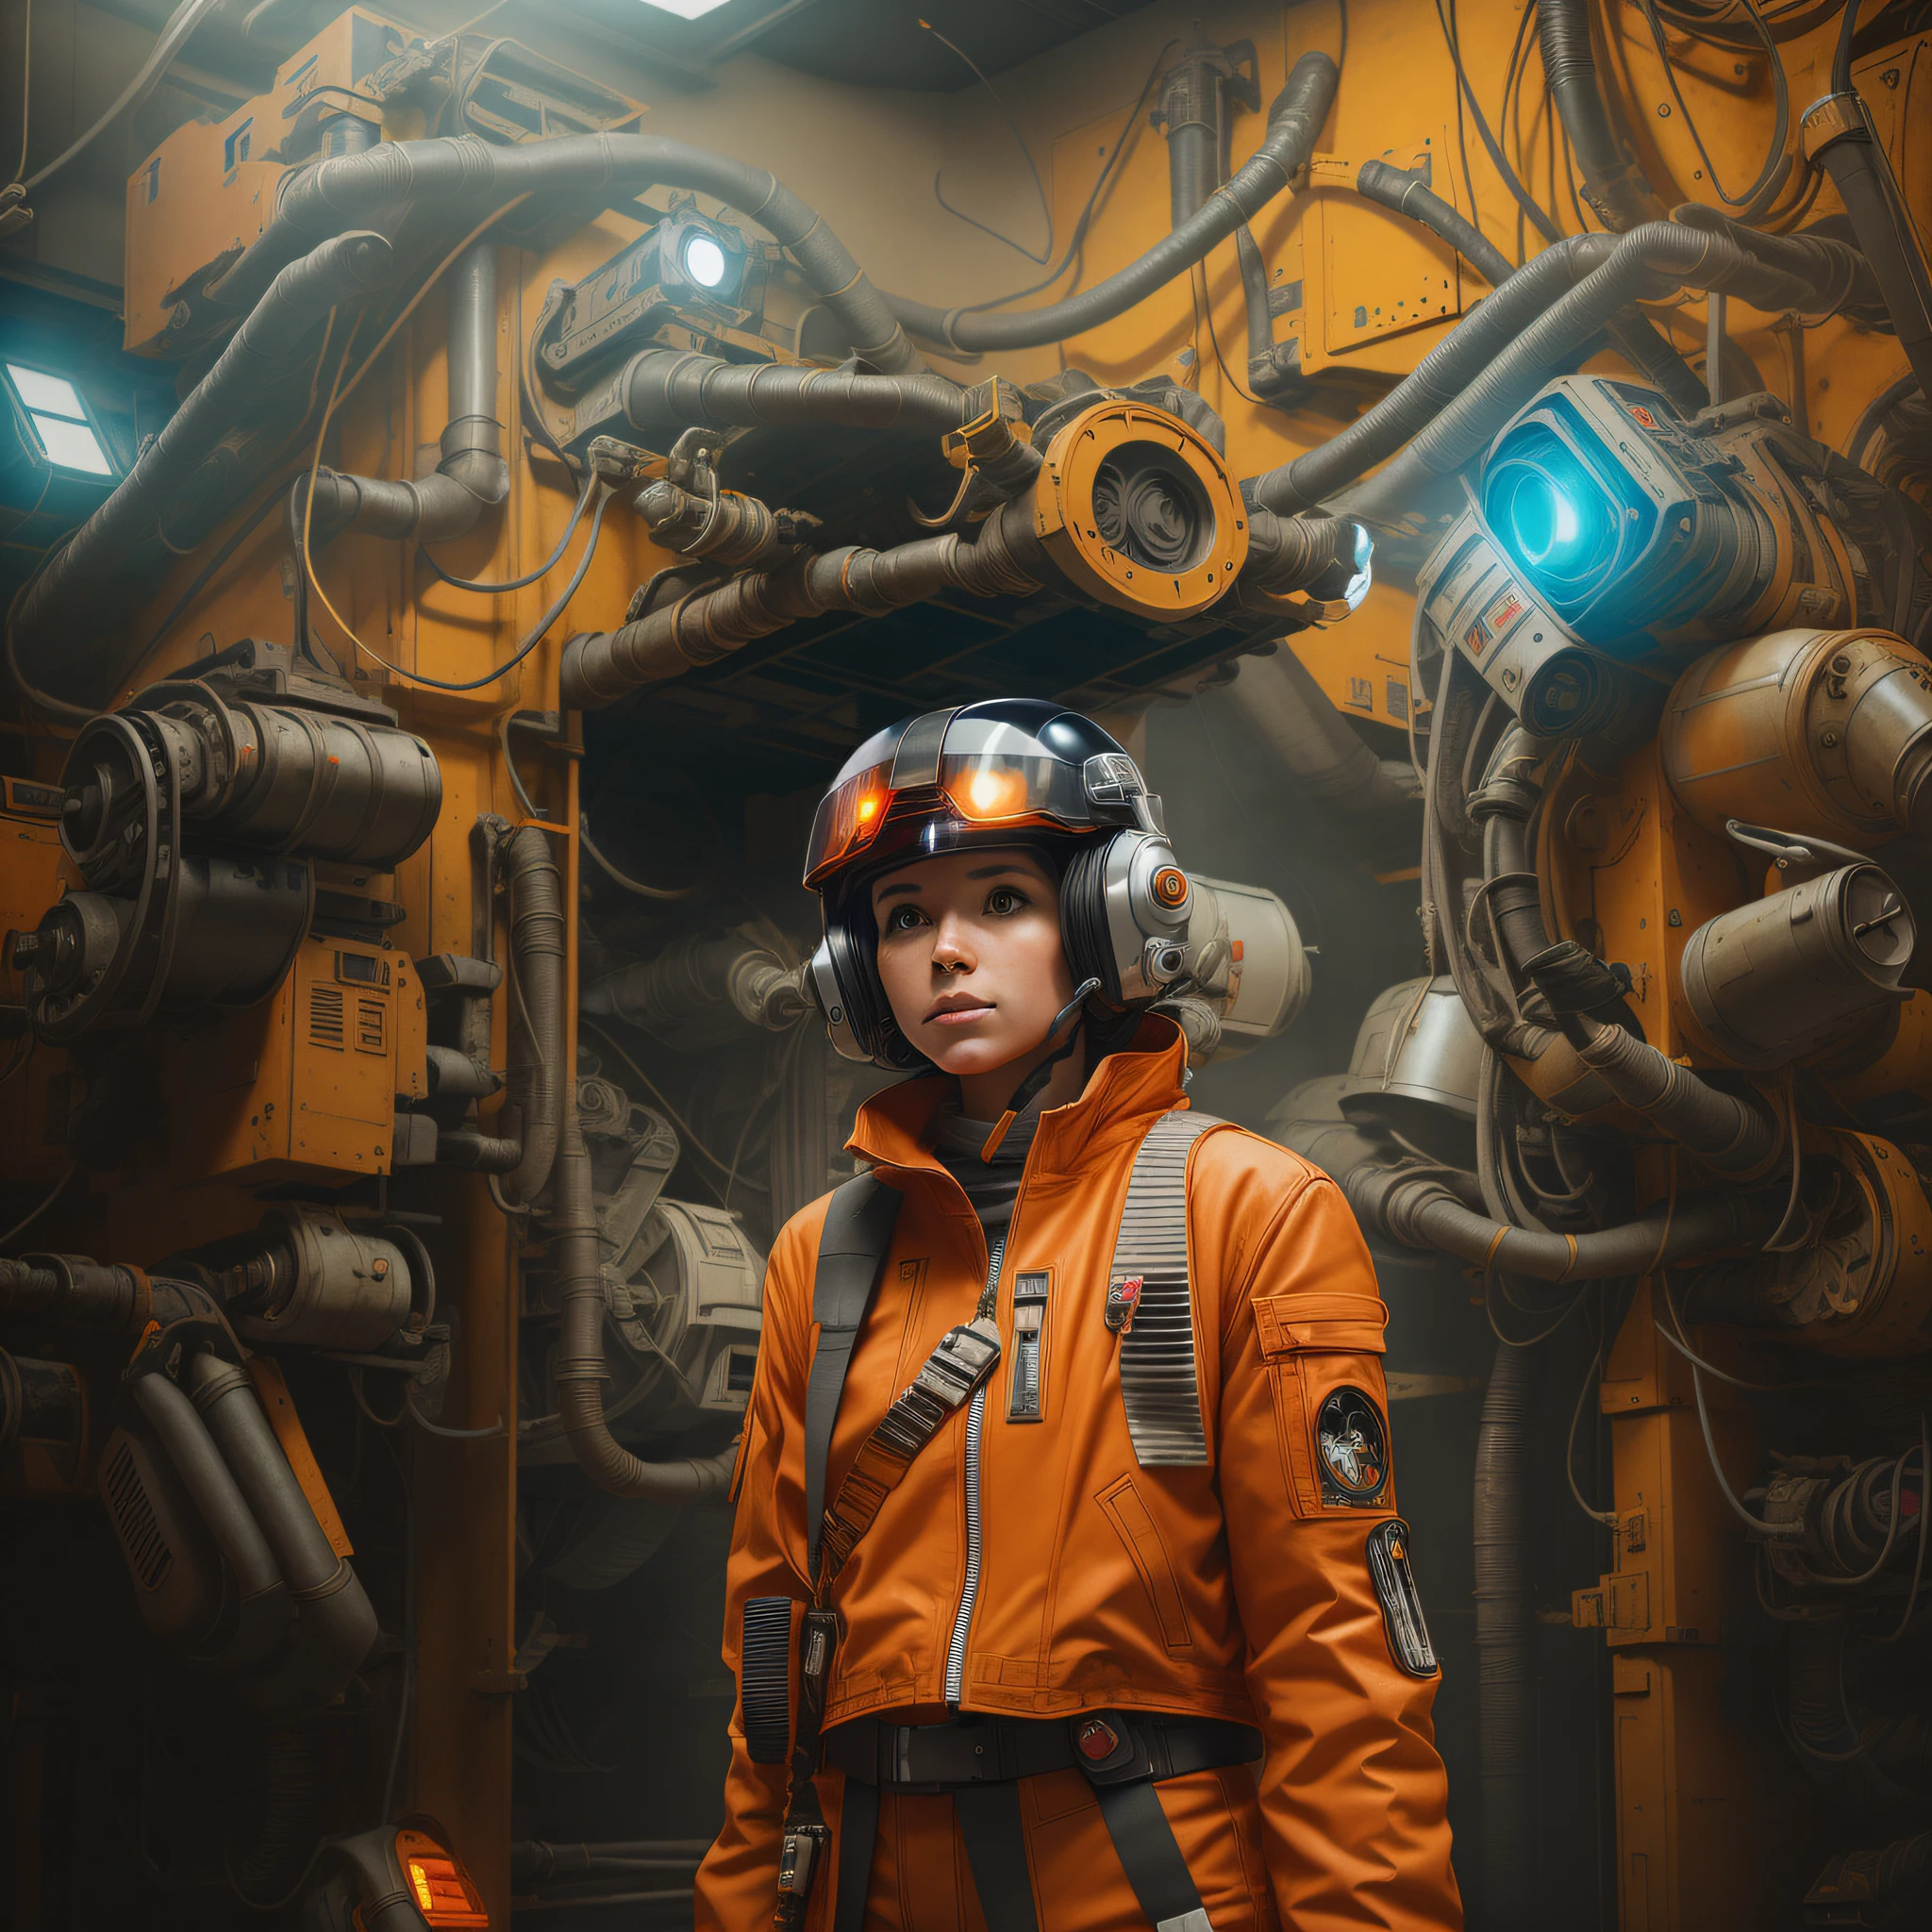 Da steht eine X-Wing-Pilotin in einer orangefarbenen Jacke und einem Helm in einem Raum mit vielen Maschinen, Star Wars Kunst ultrarealistisch 8k, Kino-Look, Porträt futuristisches Pilotenmädchen, Stil hybrider Mix aus Leuten, dreamy cyberpunk girl, Mädchen in Mecha-Cyber-Rüstung, Porträt eines schönen Science-Fiction-Mädchens, Science-Fiction Film